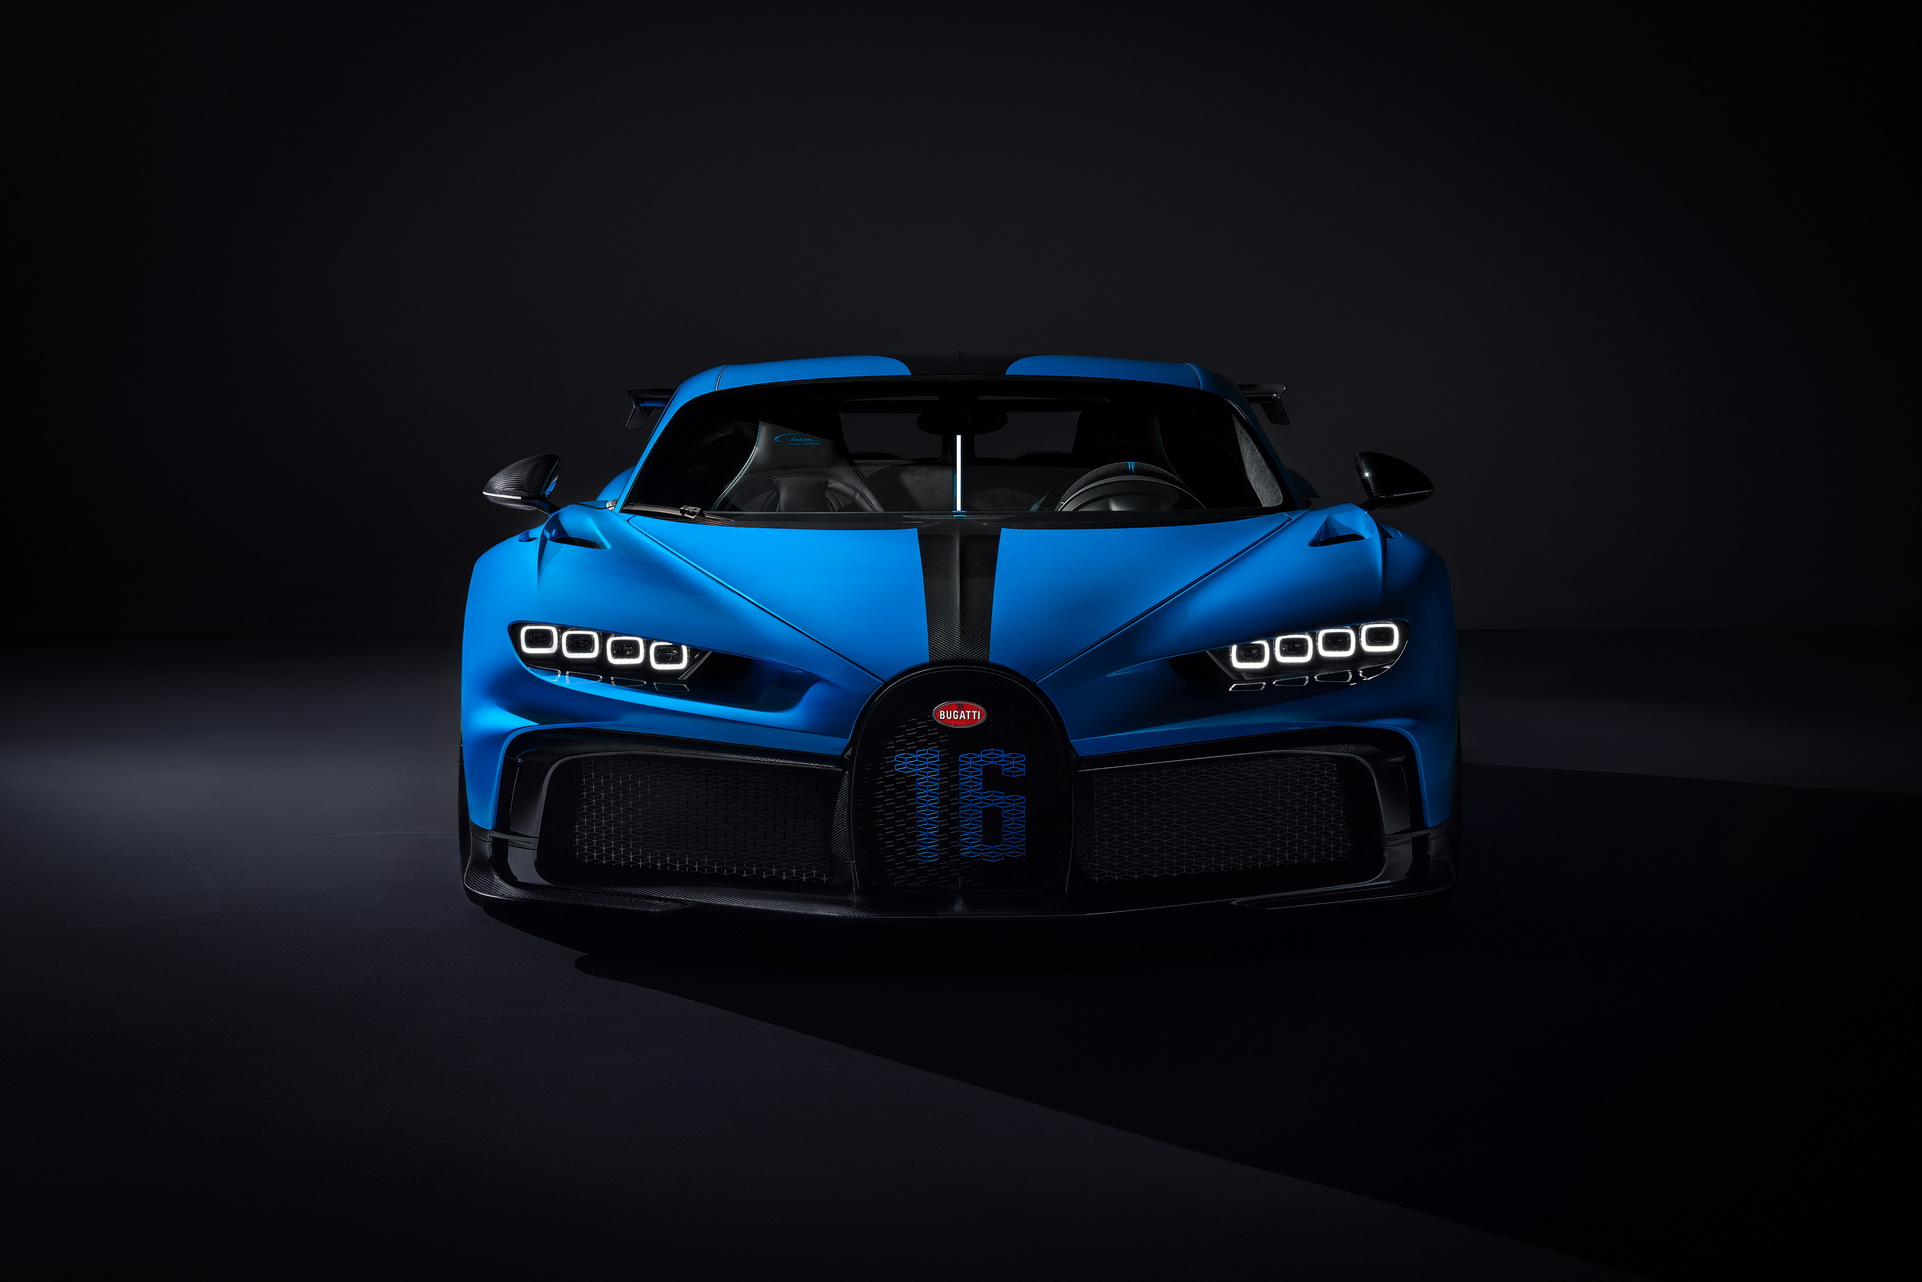 Bugatti Chiron Pur Sport Bugatti Chiron Pur Sport chắc chắn là mẫu siêu xe mơ ước của nhiều người. Với tốc độ 0-200km/h chỉ trong vòng 5,9 giây, chiếc siêu xe này thực sự xứng danh là một đại gia tốc độ. Hãy xem hình ảnh này để chiêm ngưỡng vẻ đẹp tuyệt vời và công nghệ ấn tượng của Bugatti Chiron Pur Sport.